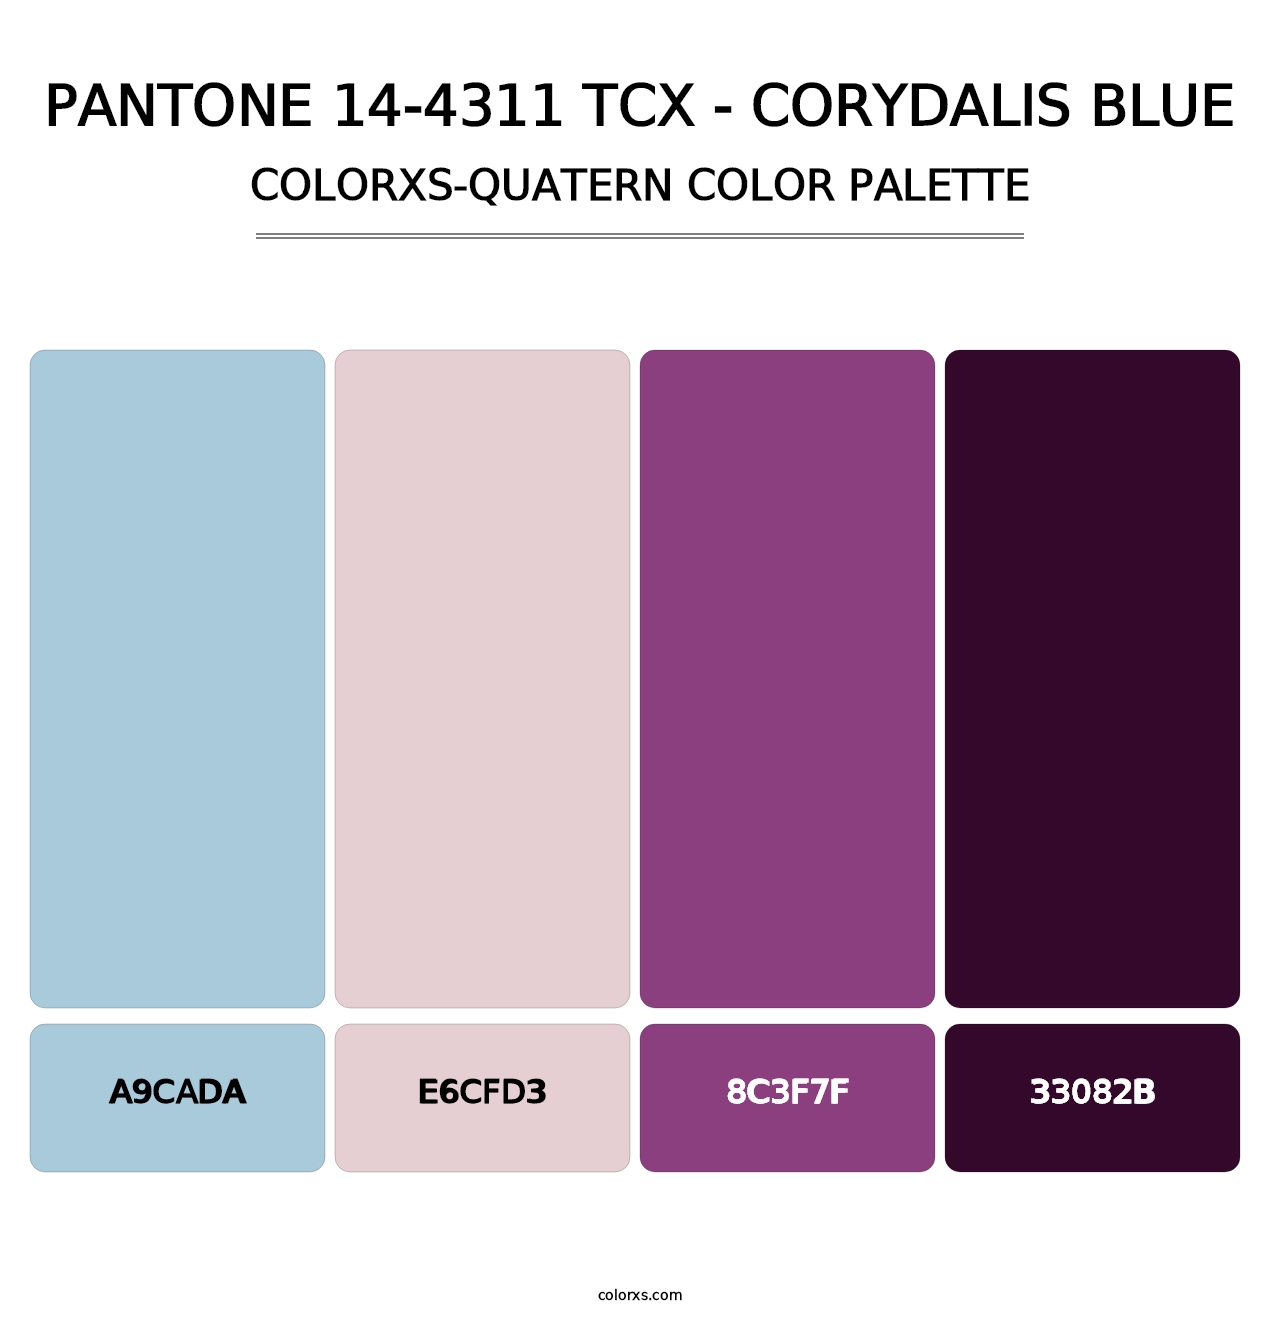 PANTONE 14-4311 TCX - Corydalis Blue - Colorxs Quatern Palette